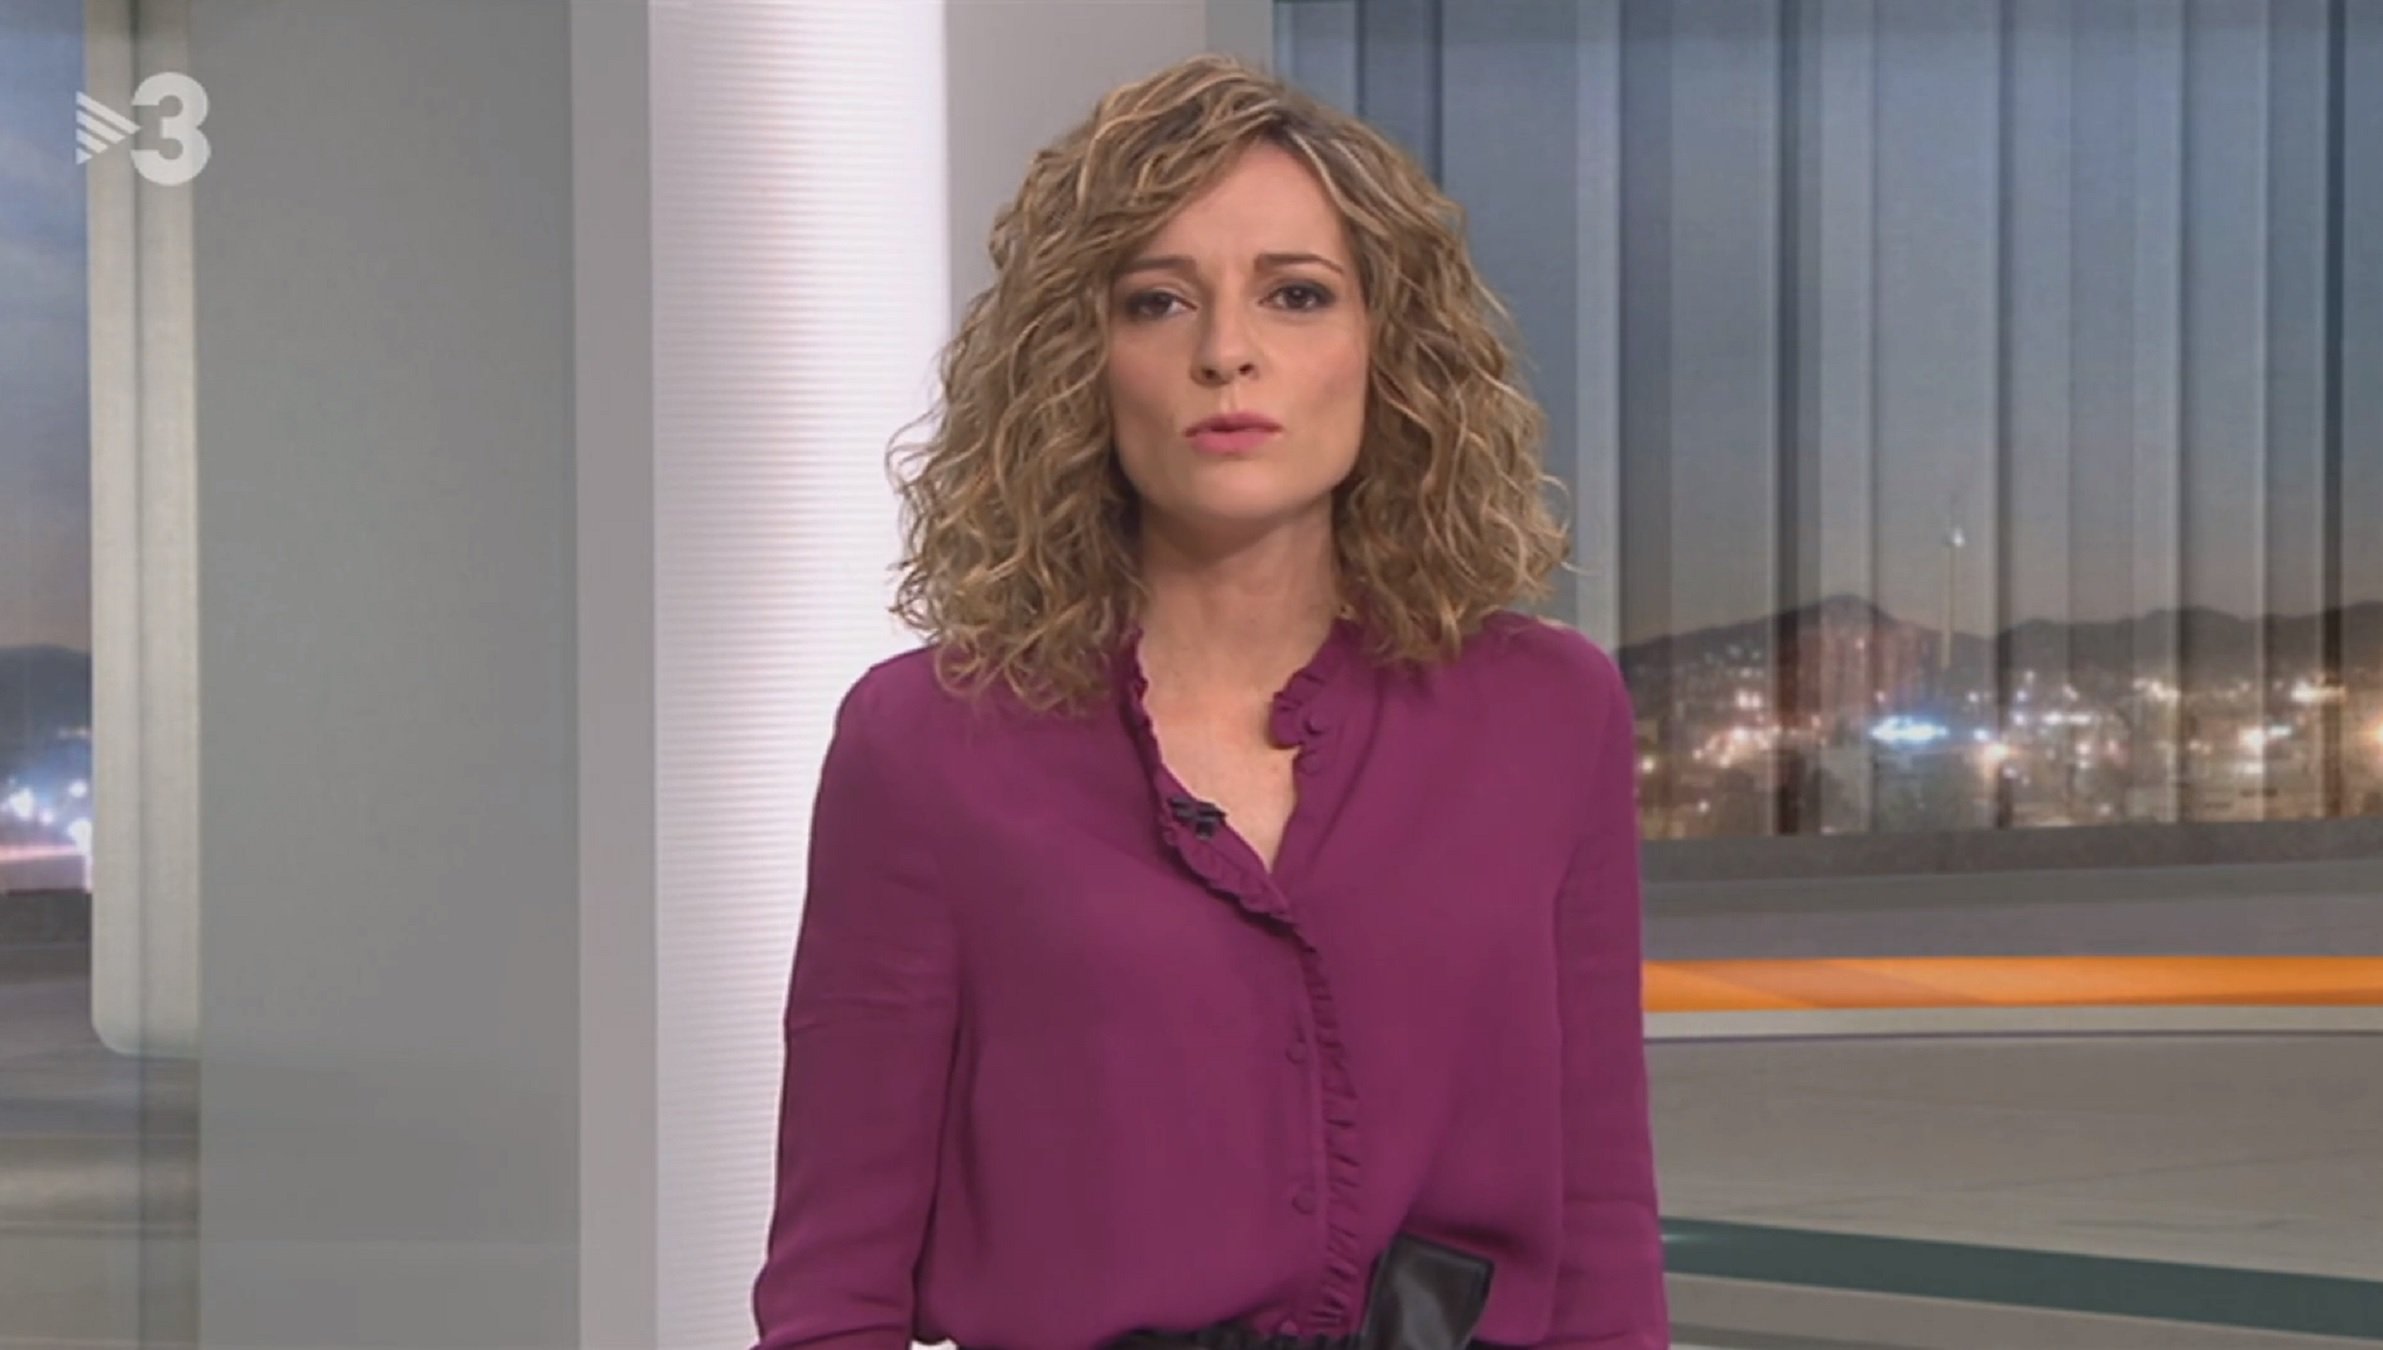 Cristina Riba de TV3, irreconeixible de jove quan era presentadora a La Sexta